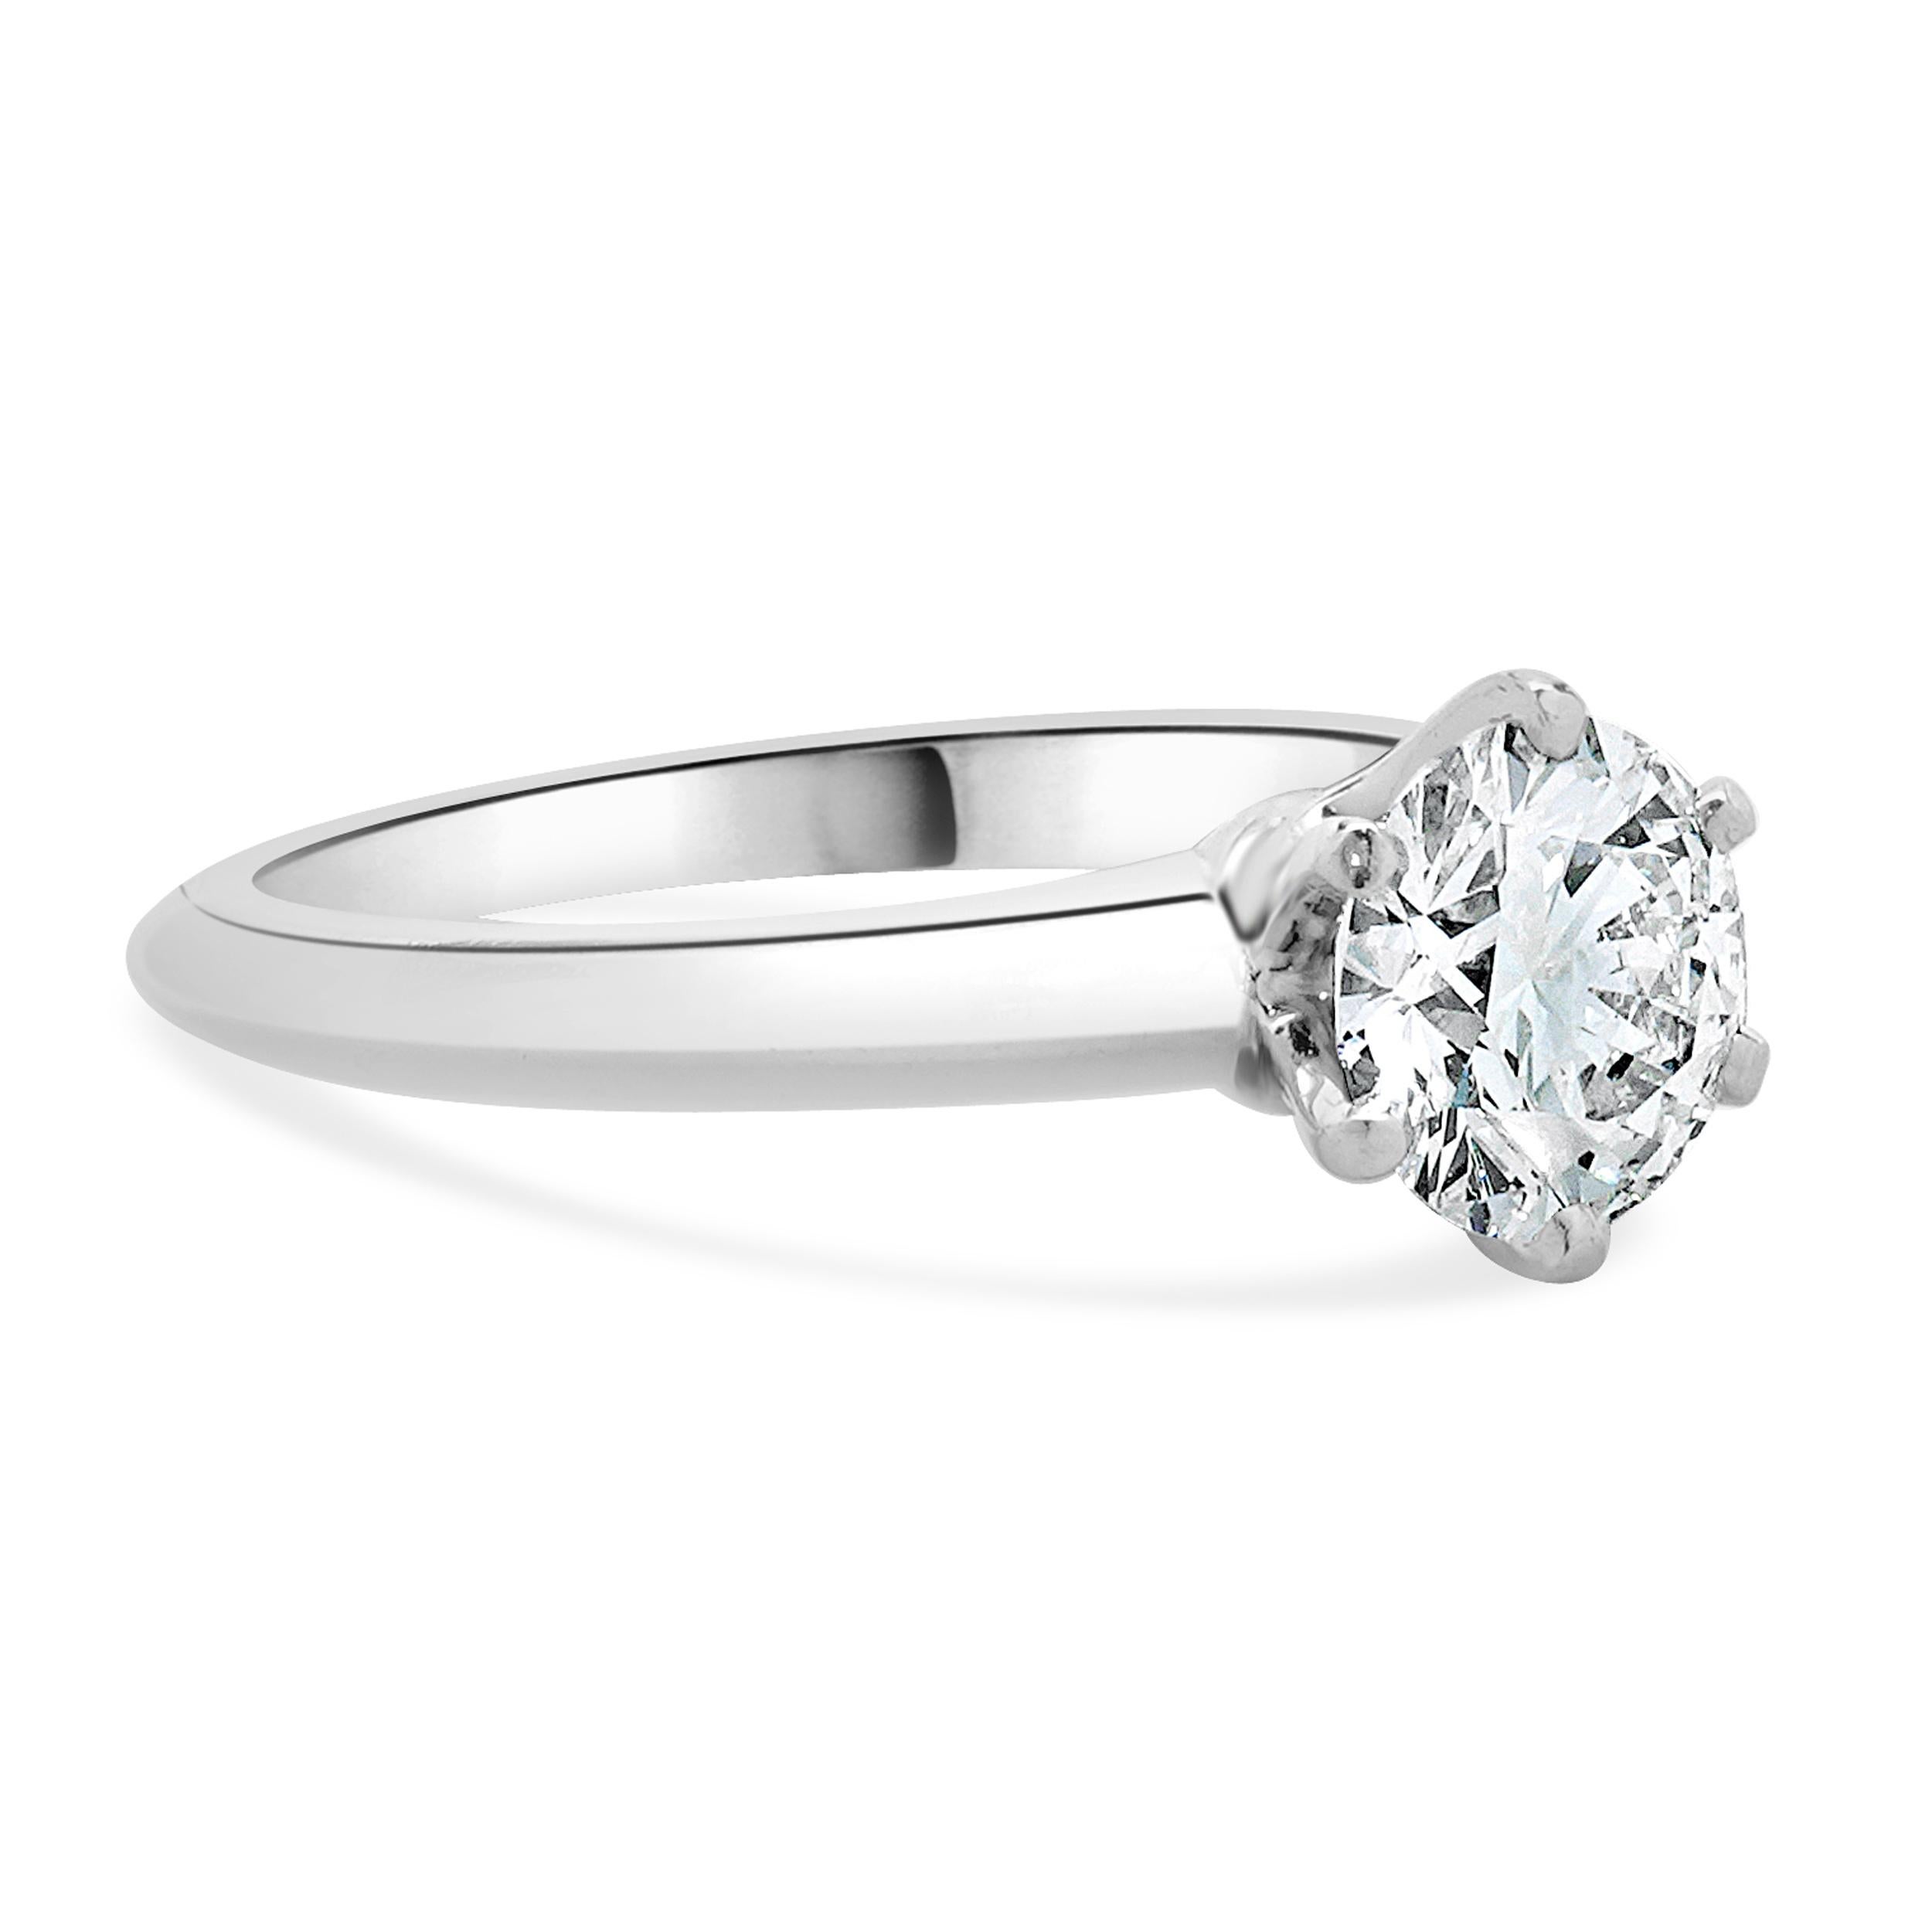 Designer : Tiffany & Co. 
MATERIAL : platine
Diamant : 1 brillant rond = 1,14ct
Couleur : D
Clarté : VS1
GIA : 11502839
AT&T. Numéro de certificat : 17002856/C10030192
Dimensions : la partie supérieure de l'anneau mesure 2.8 mm de large
Poids : 5,10